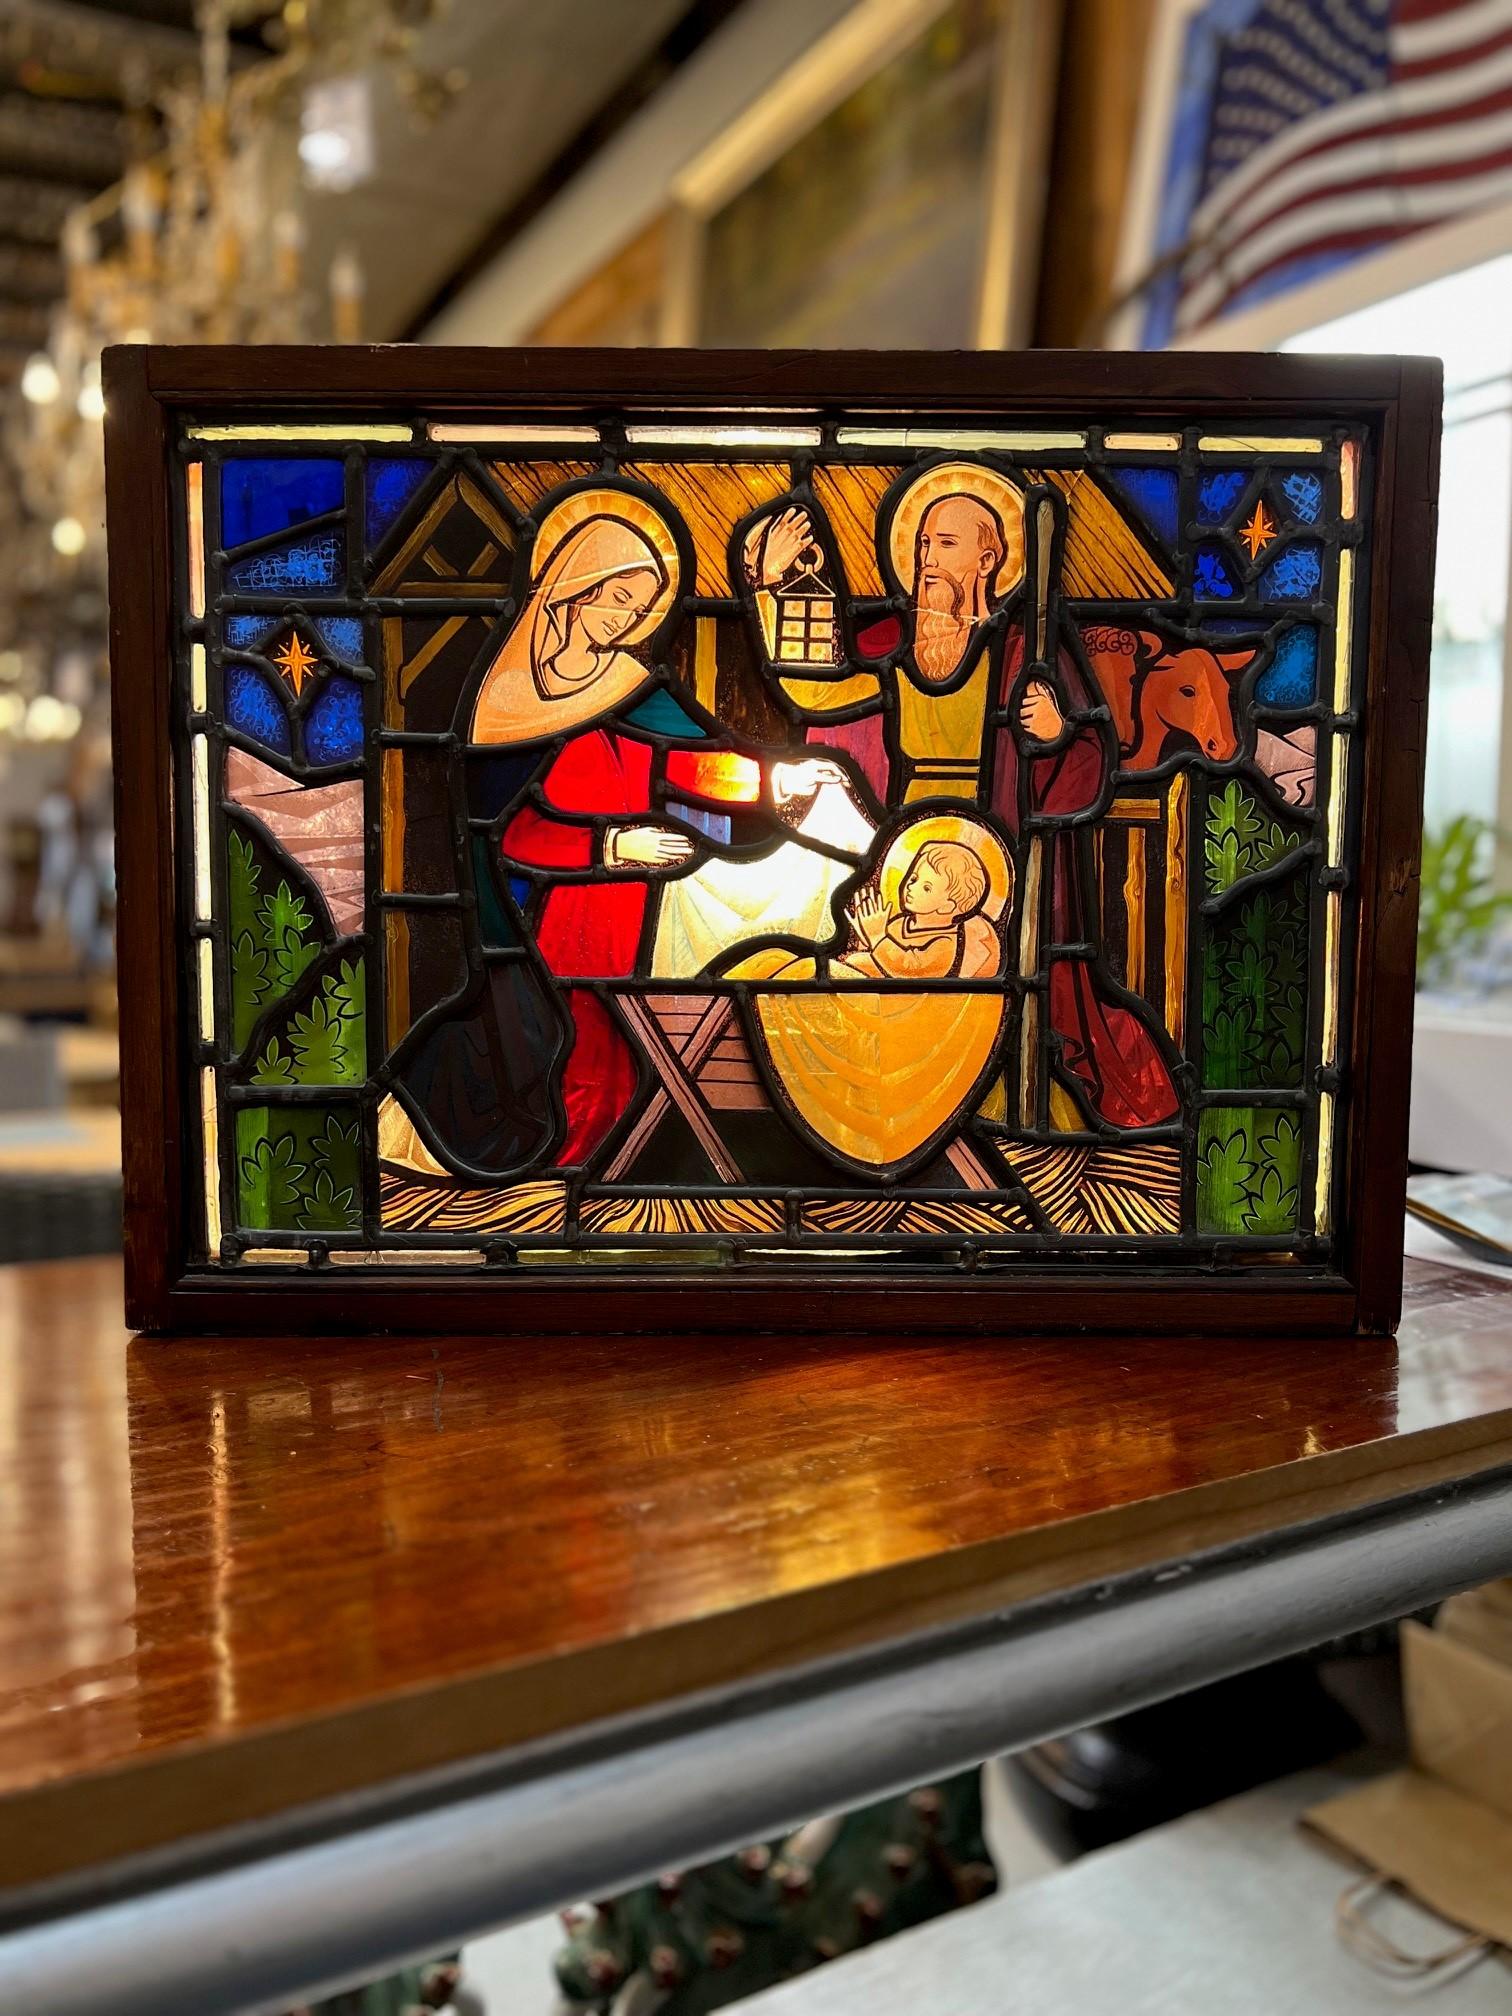 Frühes 20. Jahrhundert (vielleicht älter) antikes Glasfenster der Geburt Christi in einer Schattenbox mit Lichtern, ein tolles Stück. Ein wunderschönes Fenster voller Farben, das die Geburt Jesu in einer Krippe darstellt. Die Geburt Jesu ist seit